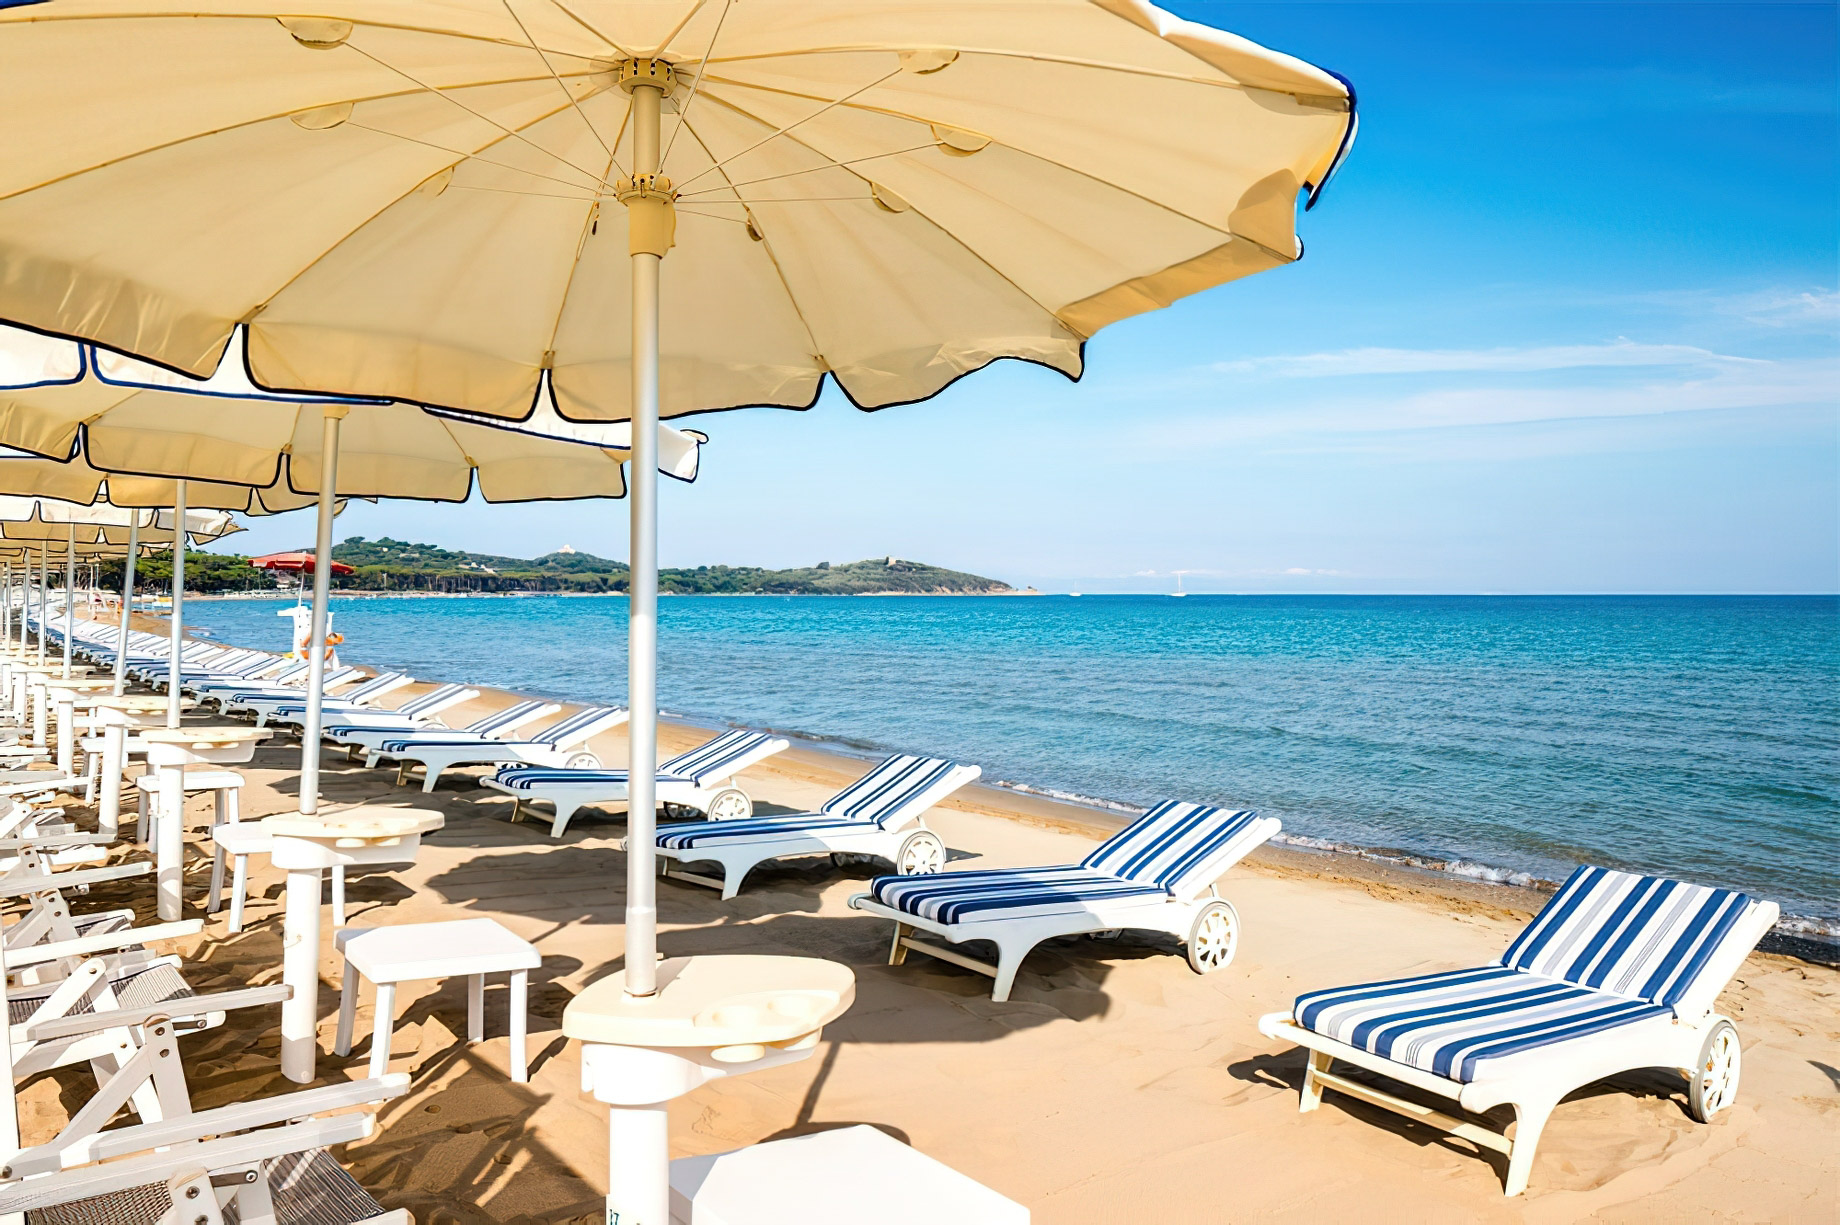 Baglioni Resort Cala del Porto Tuscany – Punta Ala, Italy – La Spiaggia Beach Club